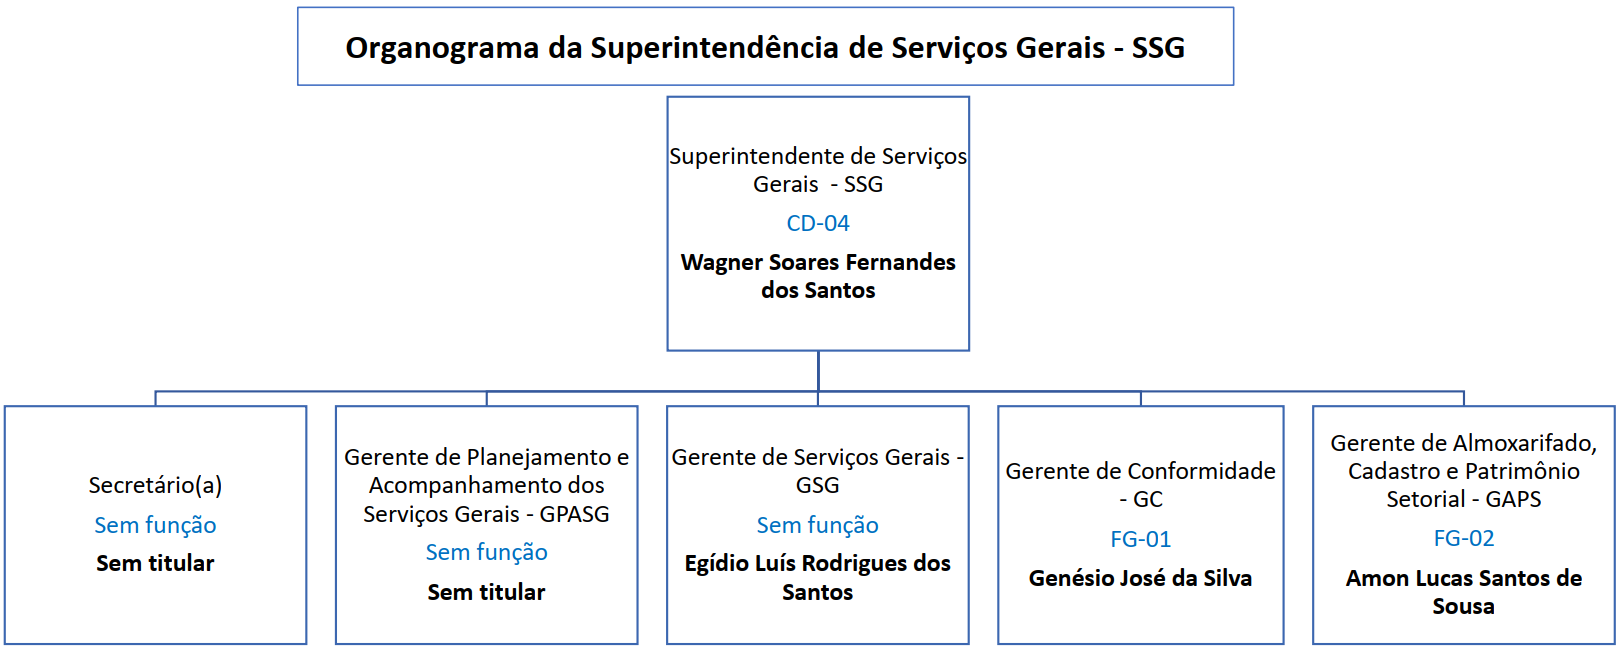 ORGANOGRAMA - SUPERINTENDENCIA DE SERVIÇOS GERAIS - SSG